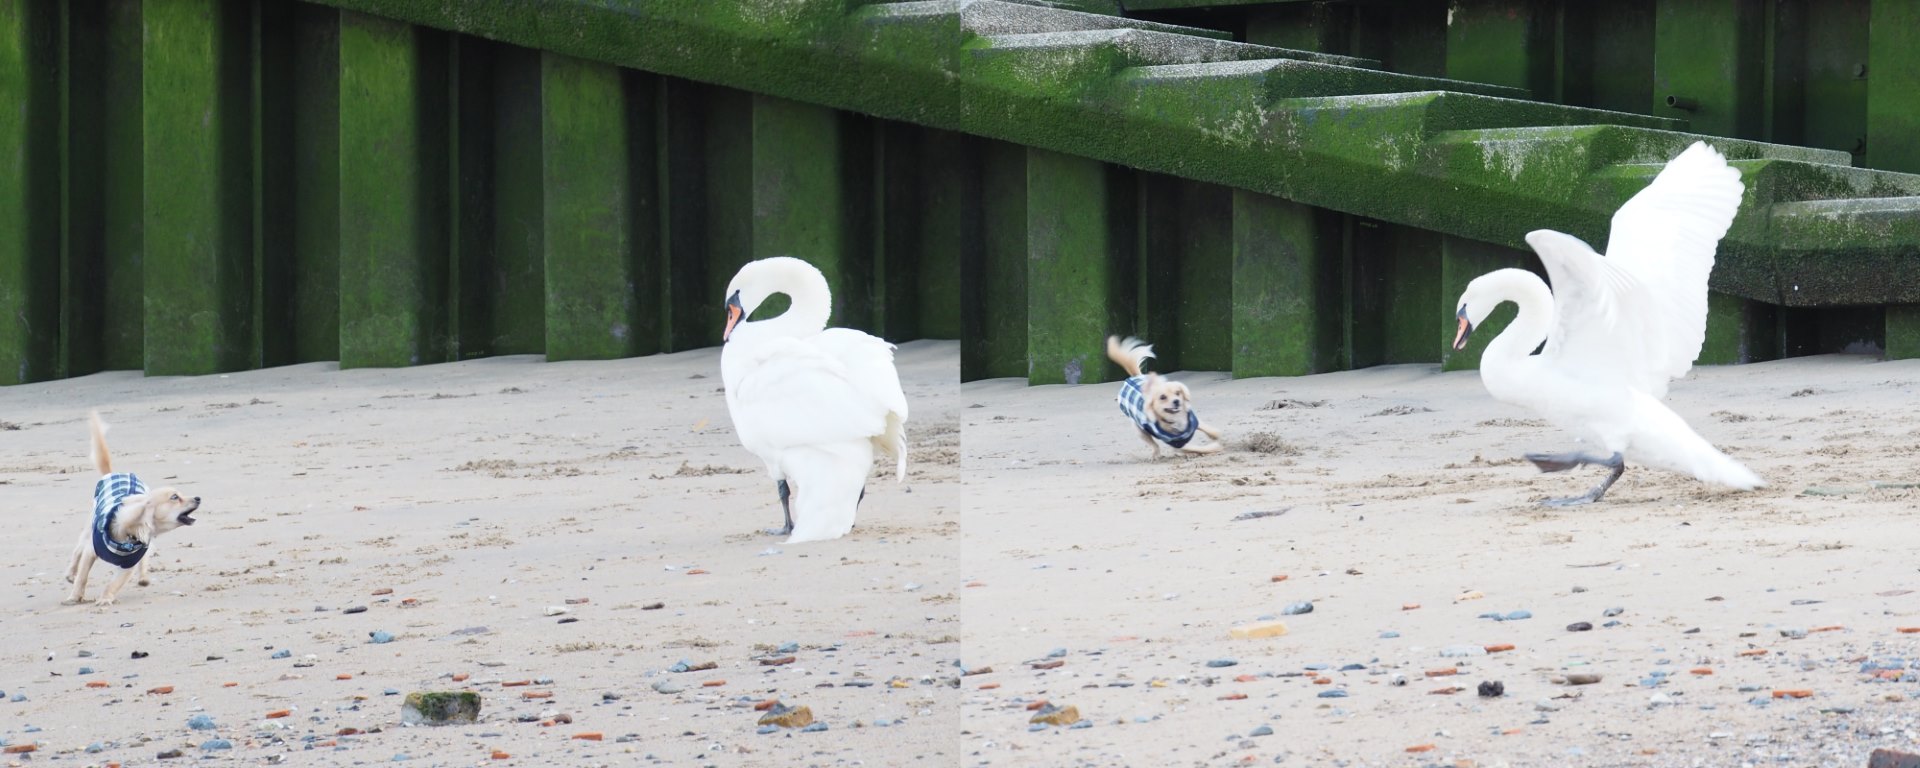 Dog vs Swan